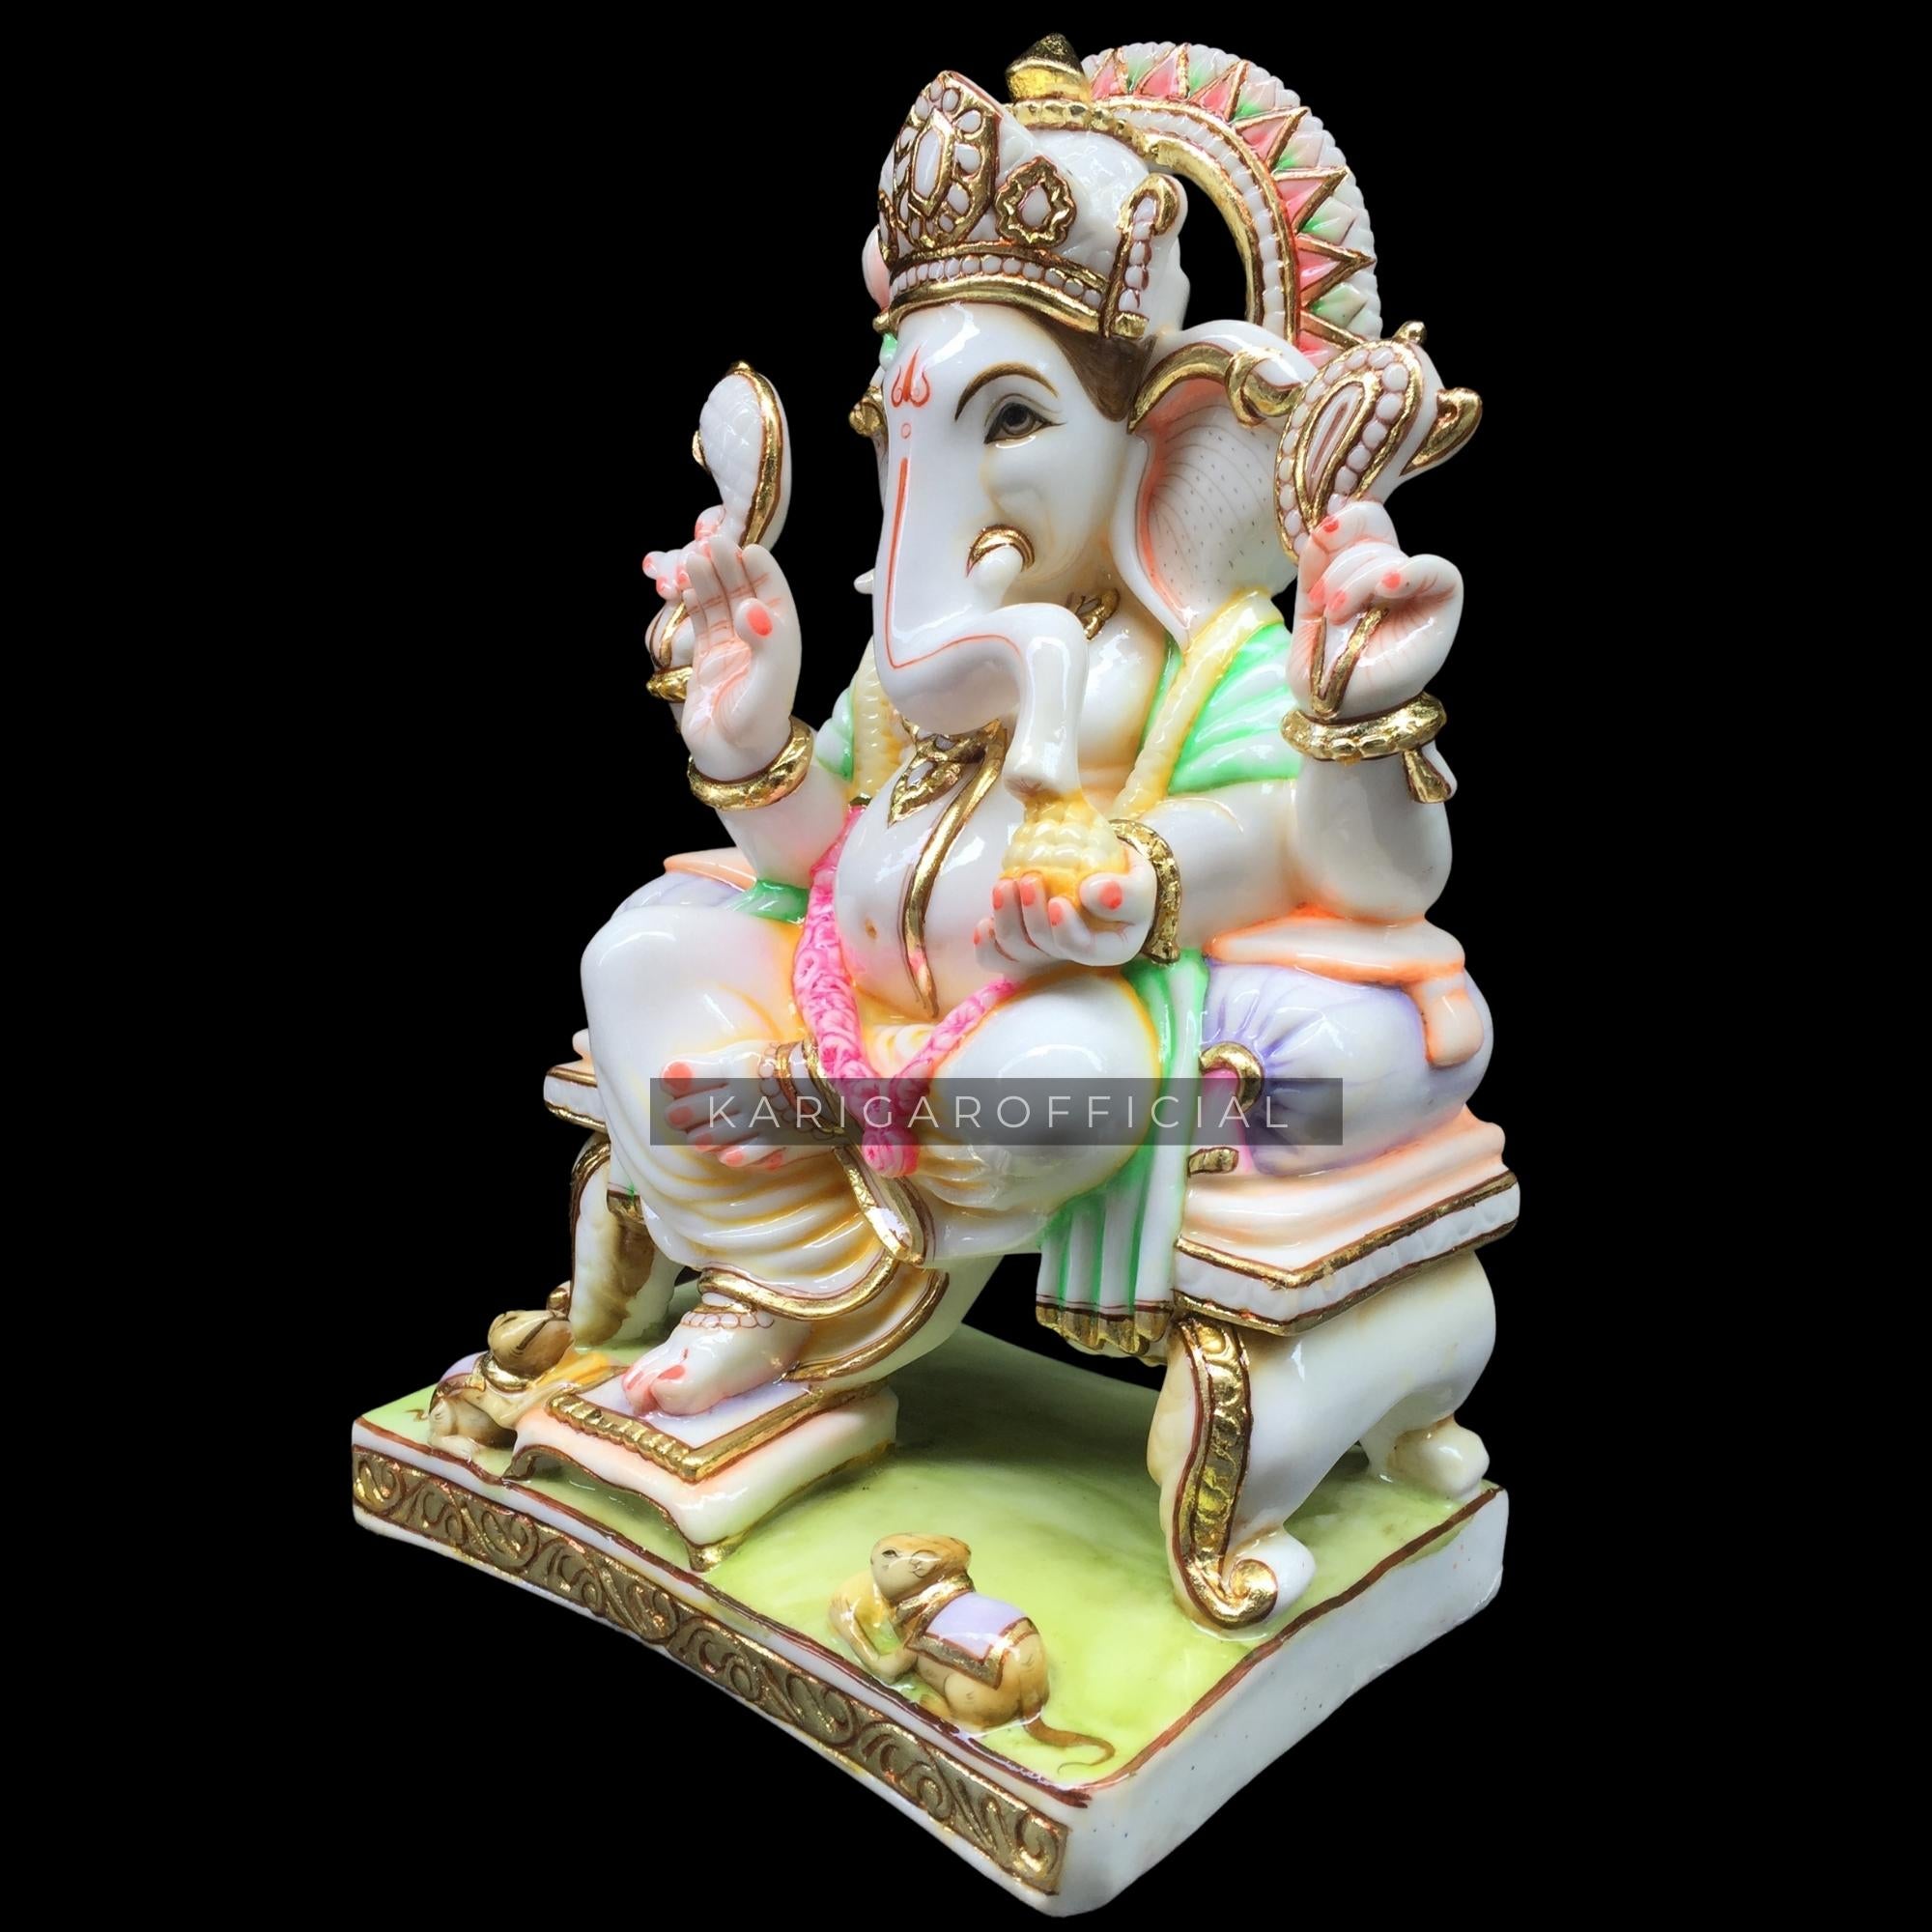 Buy Art N Hub Gift Gallery Statue Gift item - Lord Ganesha / Ganpati Online  at Best Price of Rs null - bigbasket